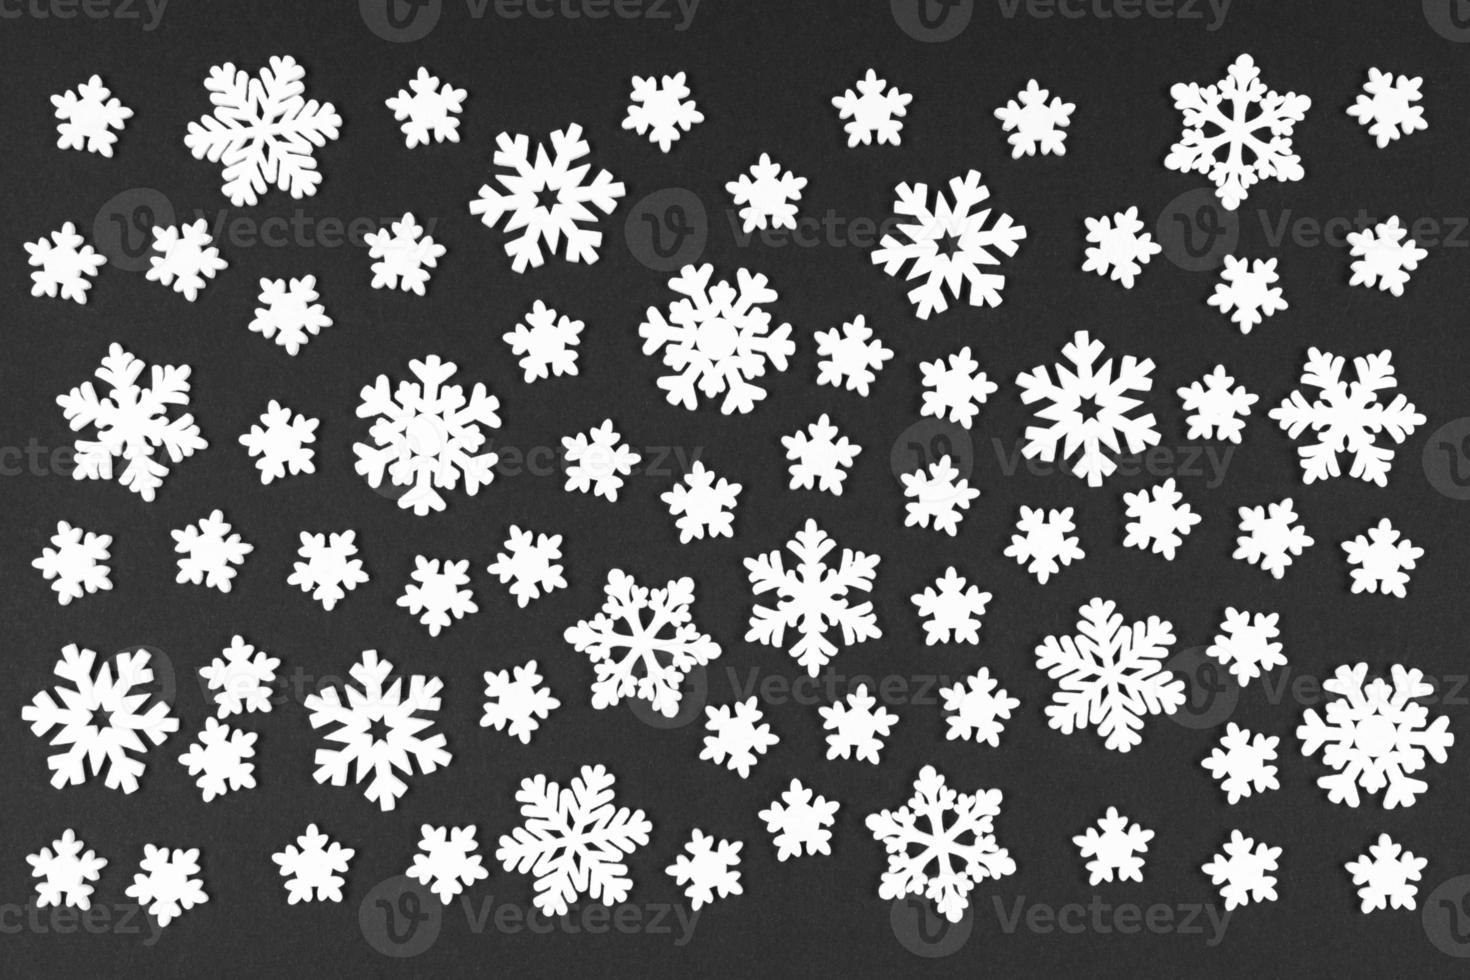 vista superior de flocos de neve brancos sobre fundo colorido. conceito de clima de inverno com espaço de cópia. feliz natal conceito foto